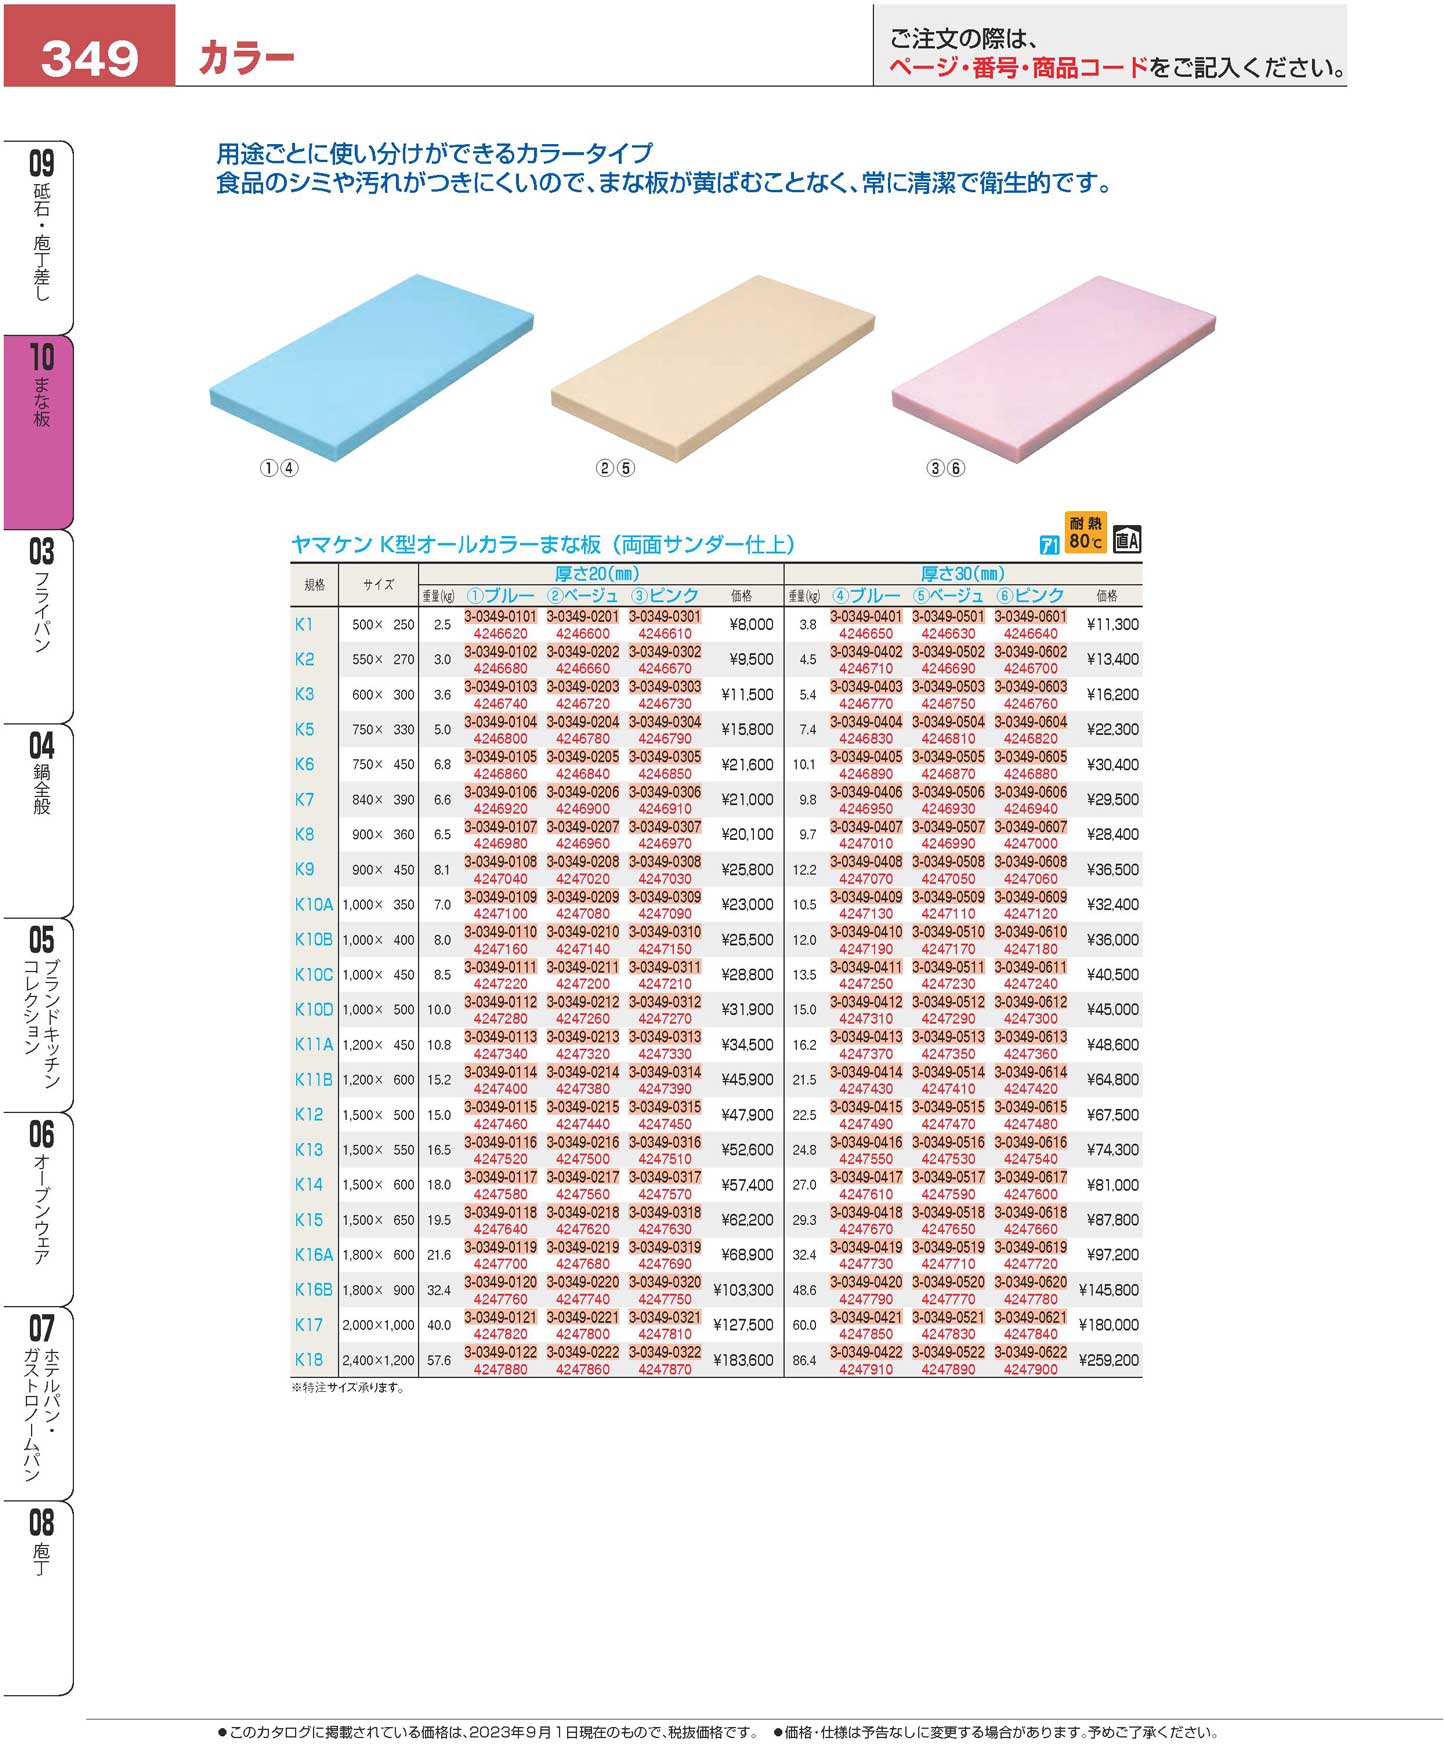 ヤマケン K型プラスチックまな板 K8 900×360×15 両面シボ付 :ebm